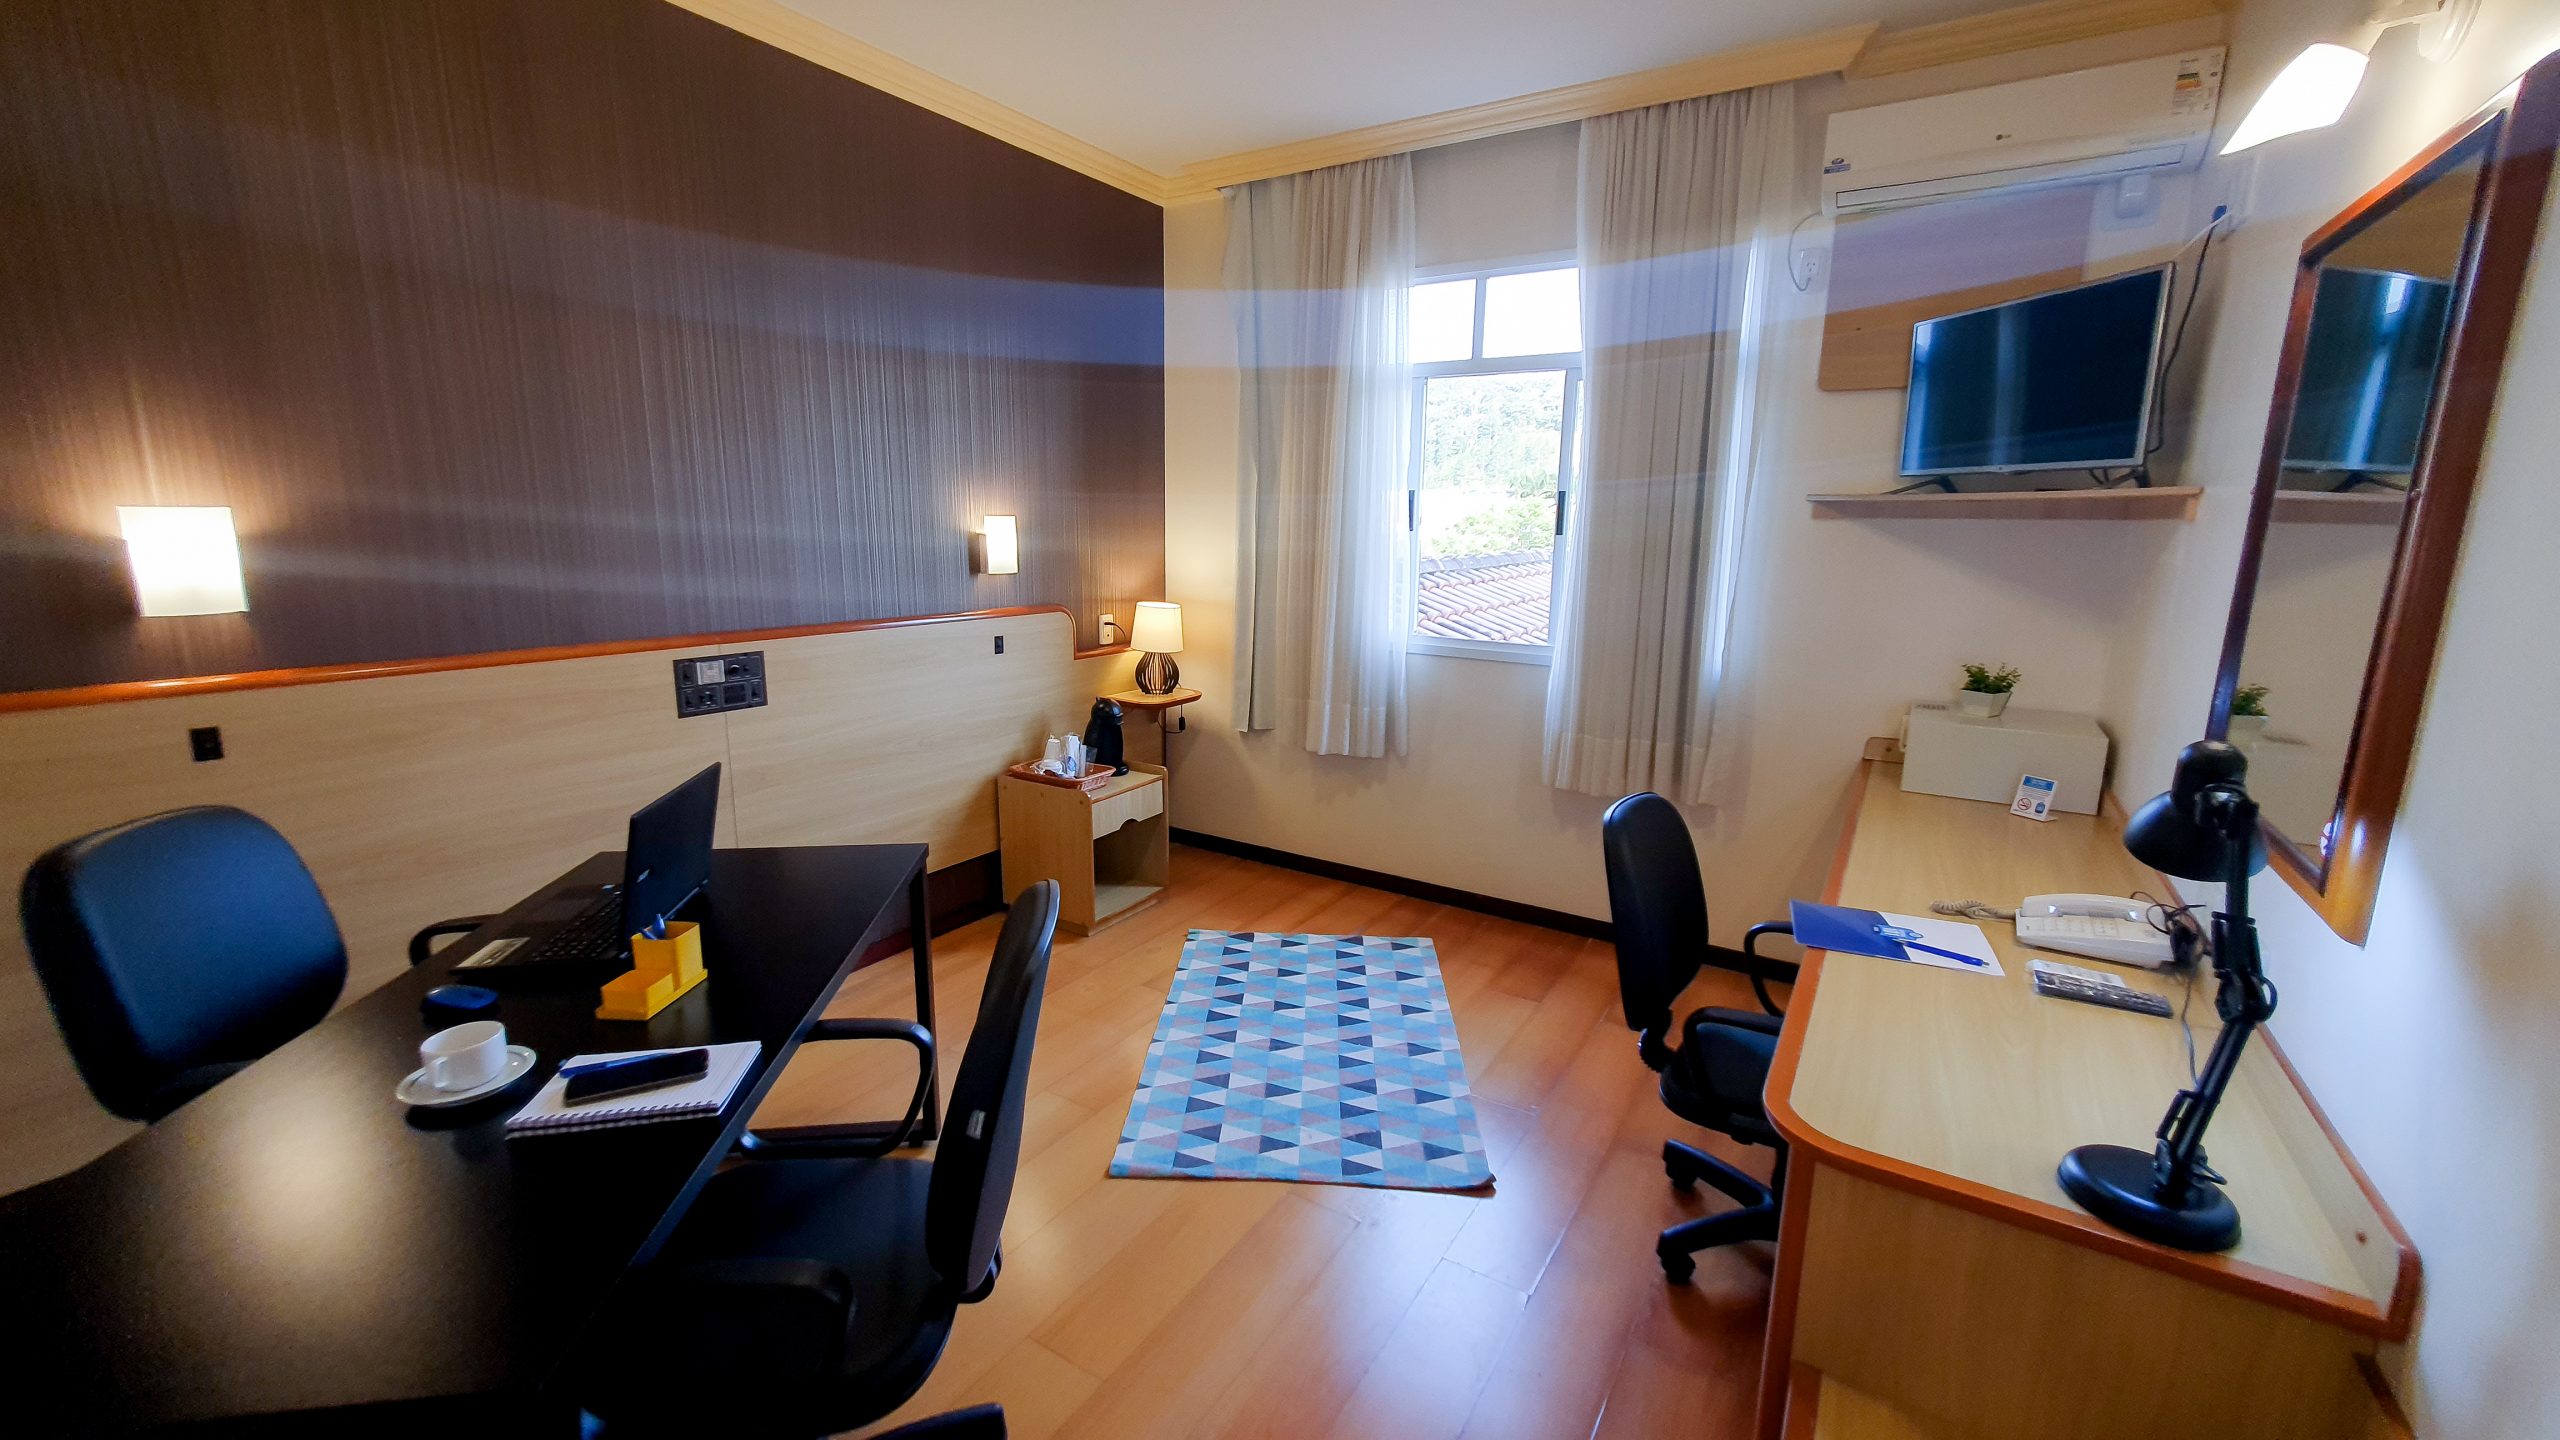 De hospedagem a escritório privado: Rede de Hotéis Estação 101 lança Room Office